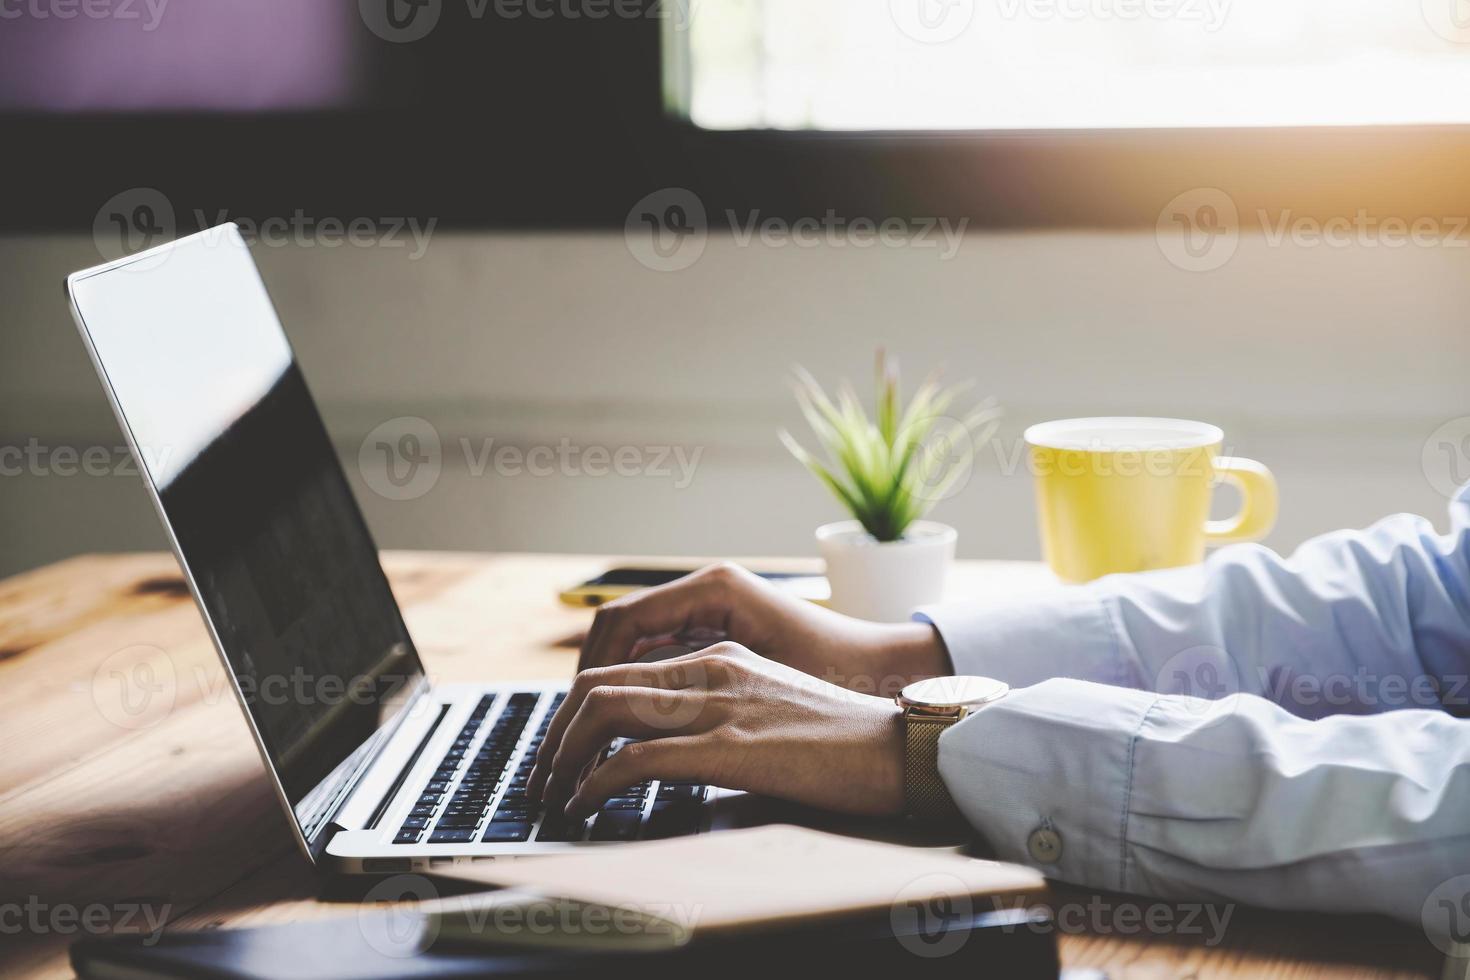 conceito freelance, feminino usando computadores para projetar trabalhos conforme solicitado pelos clientes. foto